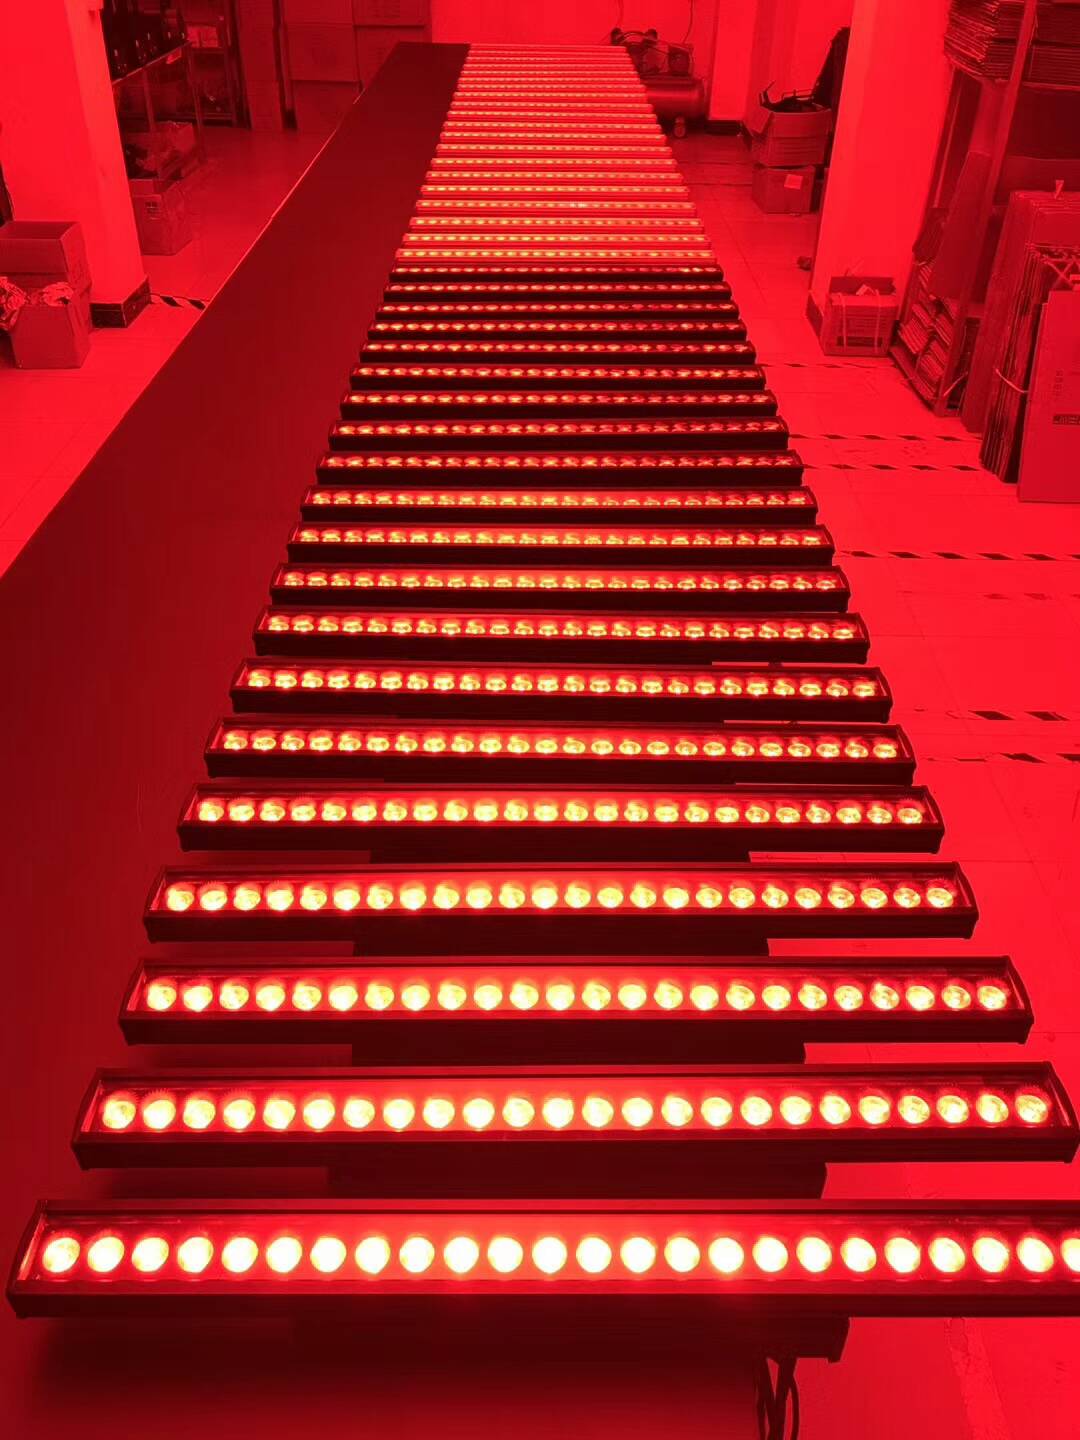 Lampefeber 2016年欧美户外灯饰灯具设计(图) - 灯饰设计图 - 挖家网